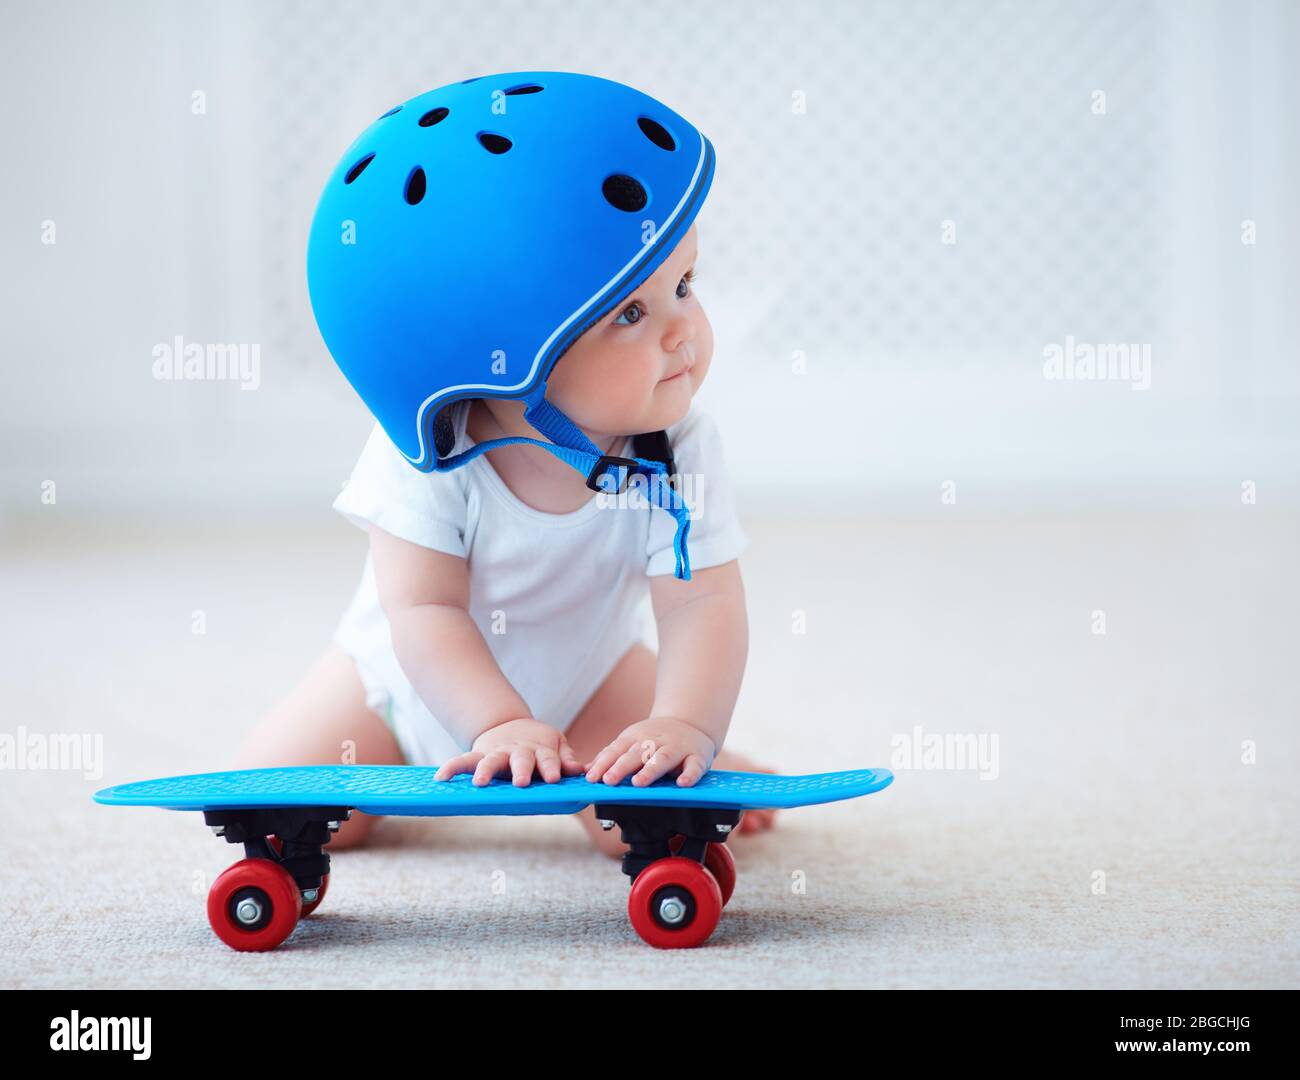 jolie petite fille pour bébé avec casque de protection prêt à monter sur le  skateboard, concept sport extrême Photo Stock - Alamy